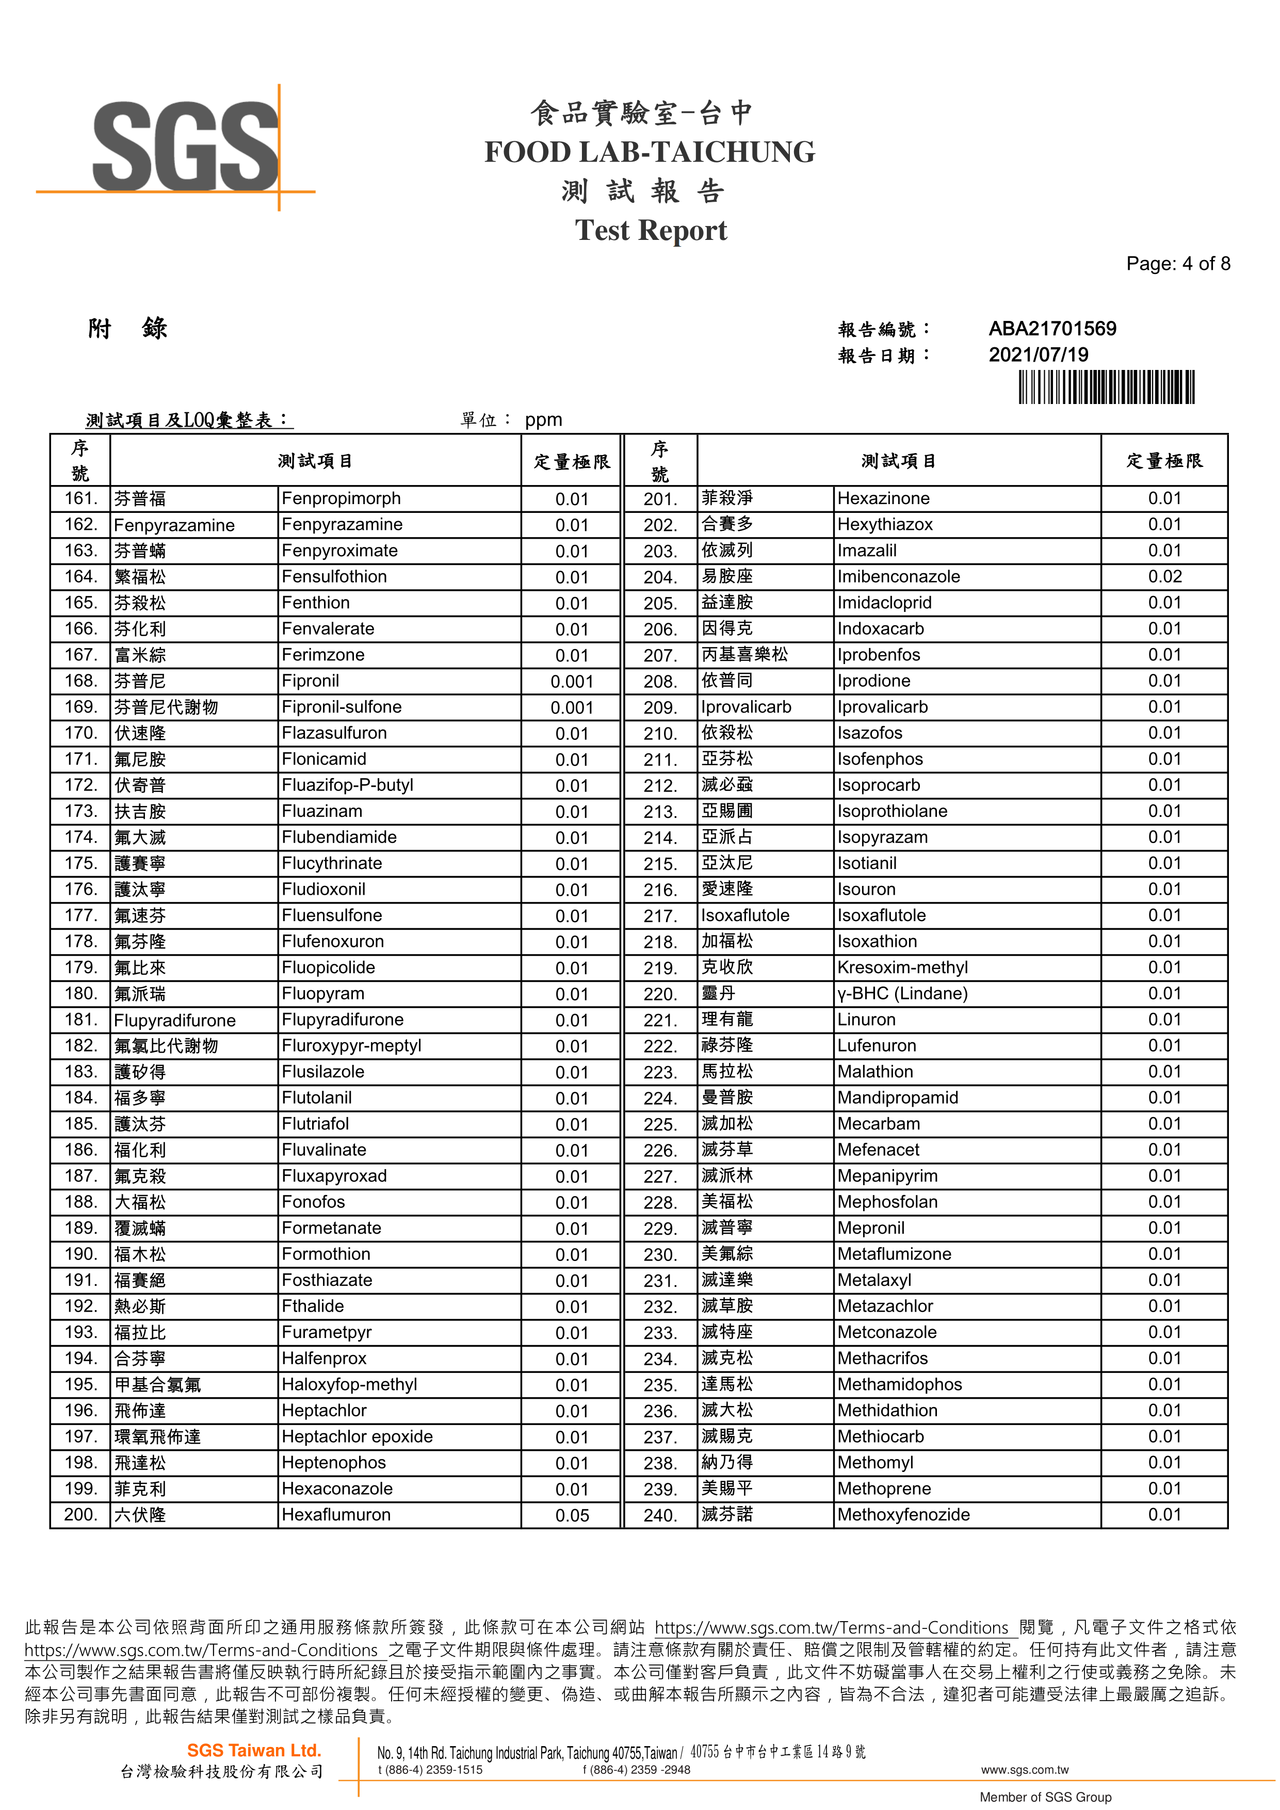 貝貝吻魚寶寶粥-農藥殘留380檢驗報告2021.07.19